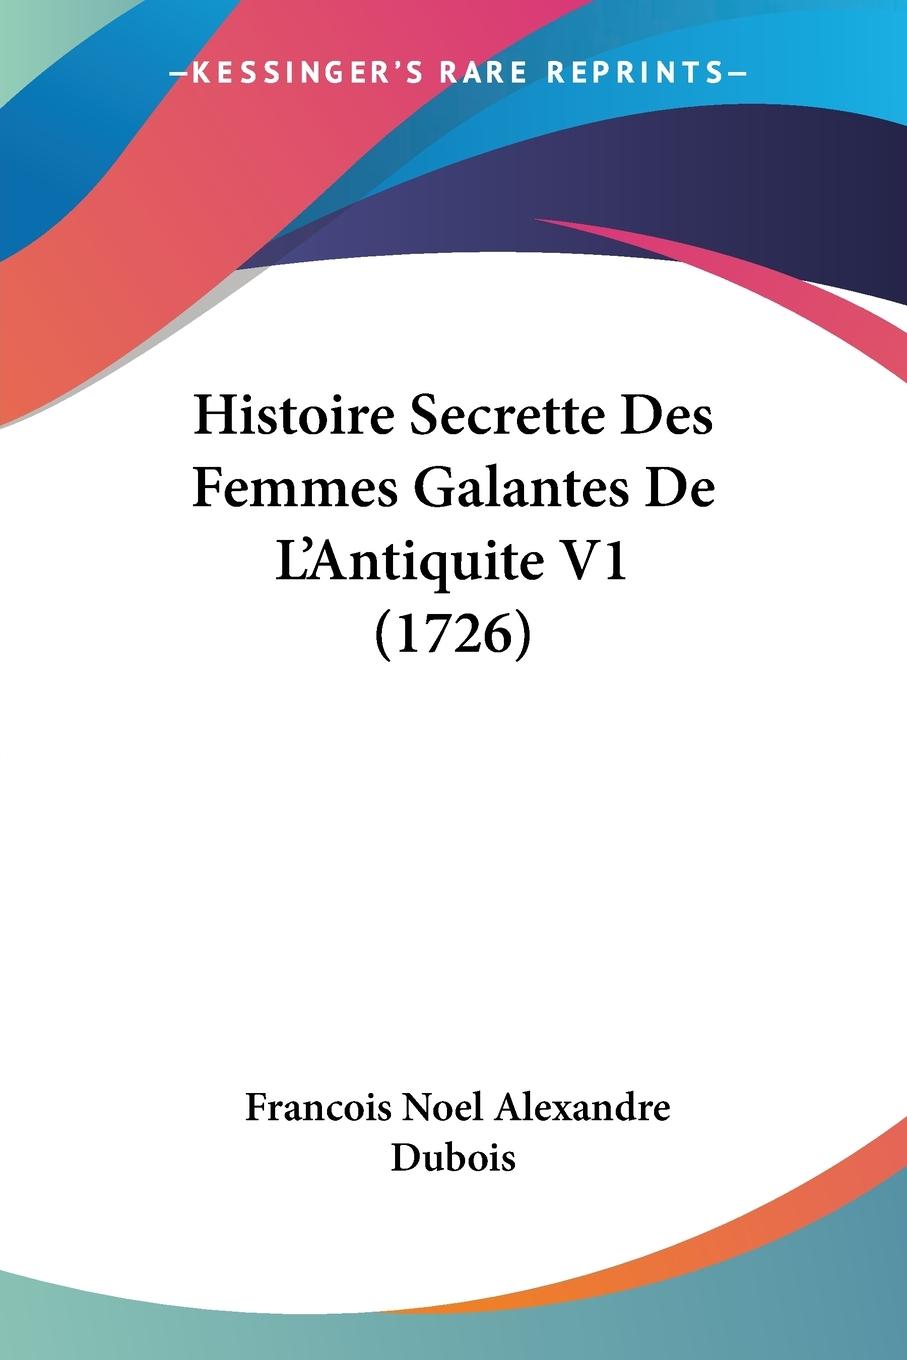 Histoire Secrette Des Femmes Galantes De L Antiquite V1 (1726) - Dubois, Francois Noel Alexandre